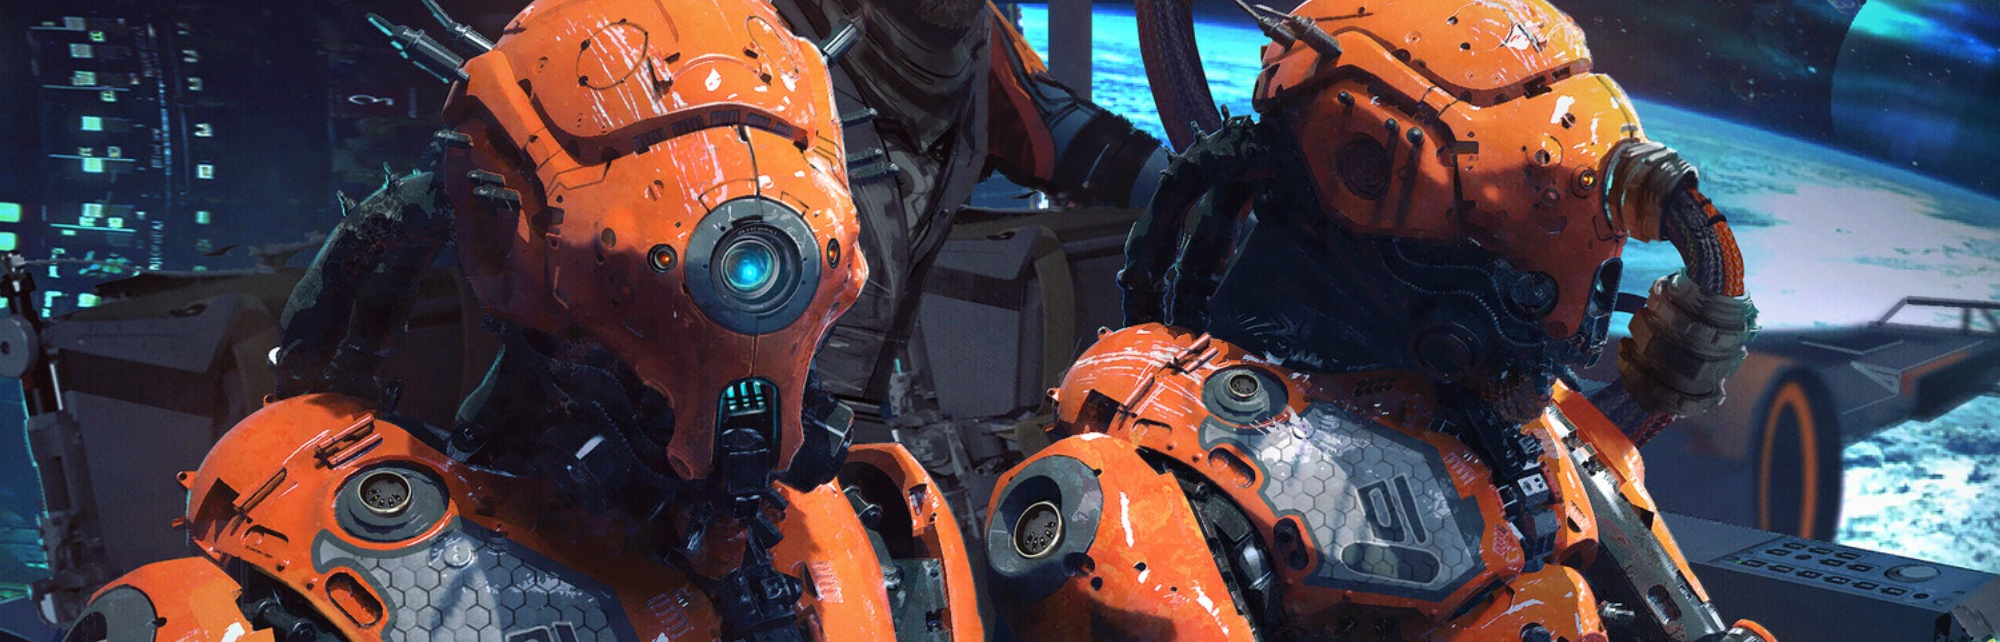 orange robots pilot spaceship